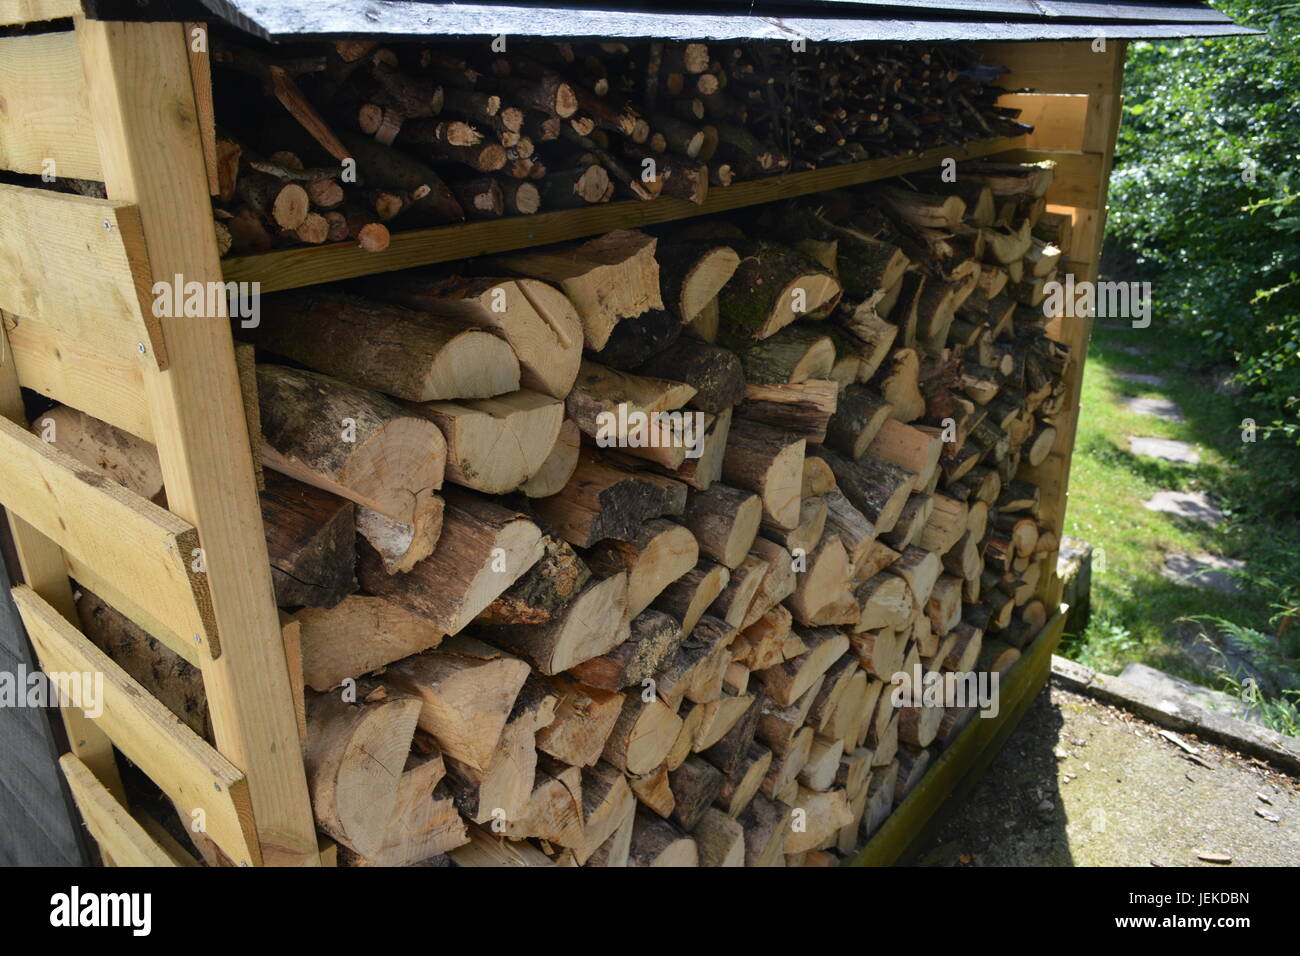 Holz Holz store komplett bestückte mit gehacktem Holz für den Winter Kaminfeuer Holz Brenner re Heizung warmhalten England Großbritannien Stockfoto